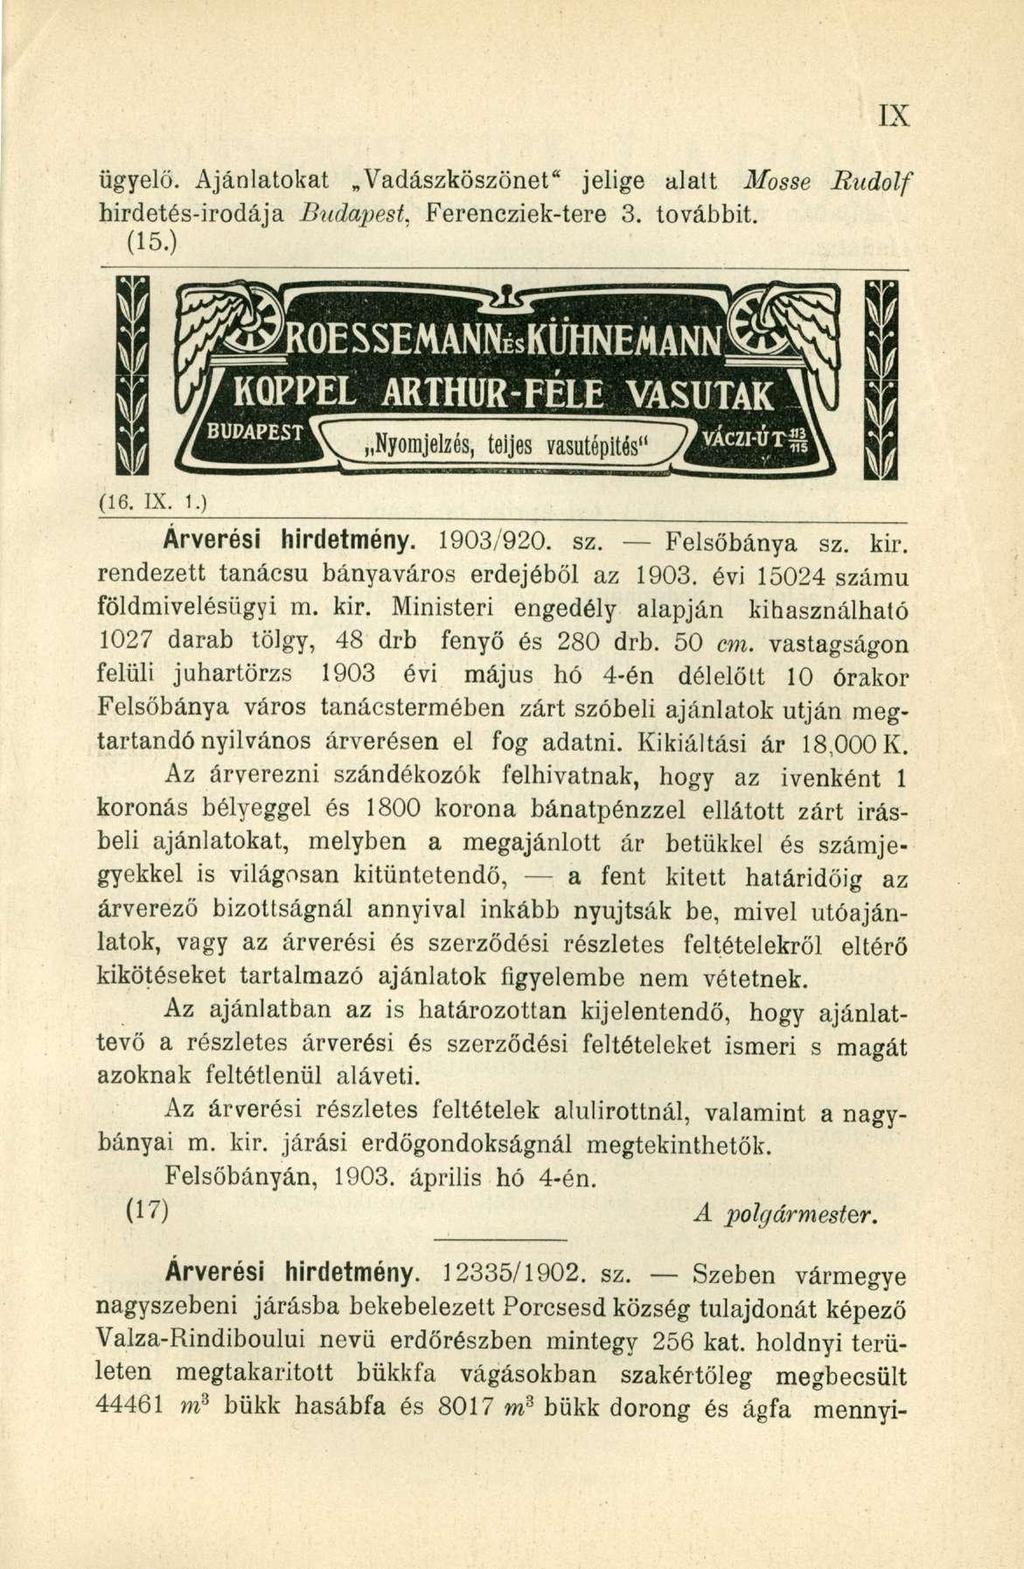 ügyelő. Ajánlatokat Vadászköszönet" jelige alatt Mosse Rudolf hirdetés-irodája Btidapest. Ferencziek-tere 3. továbbit. (15.